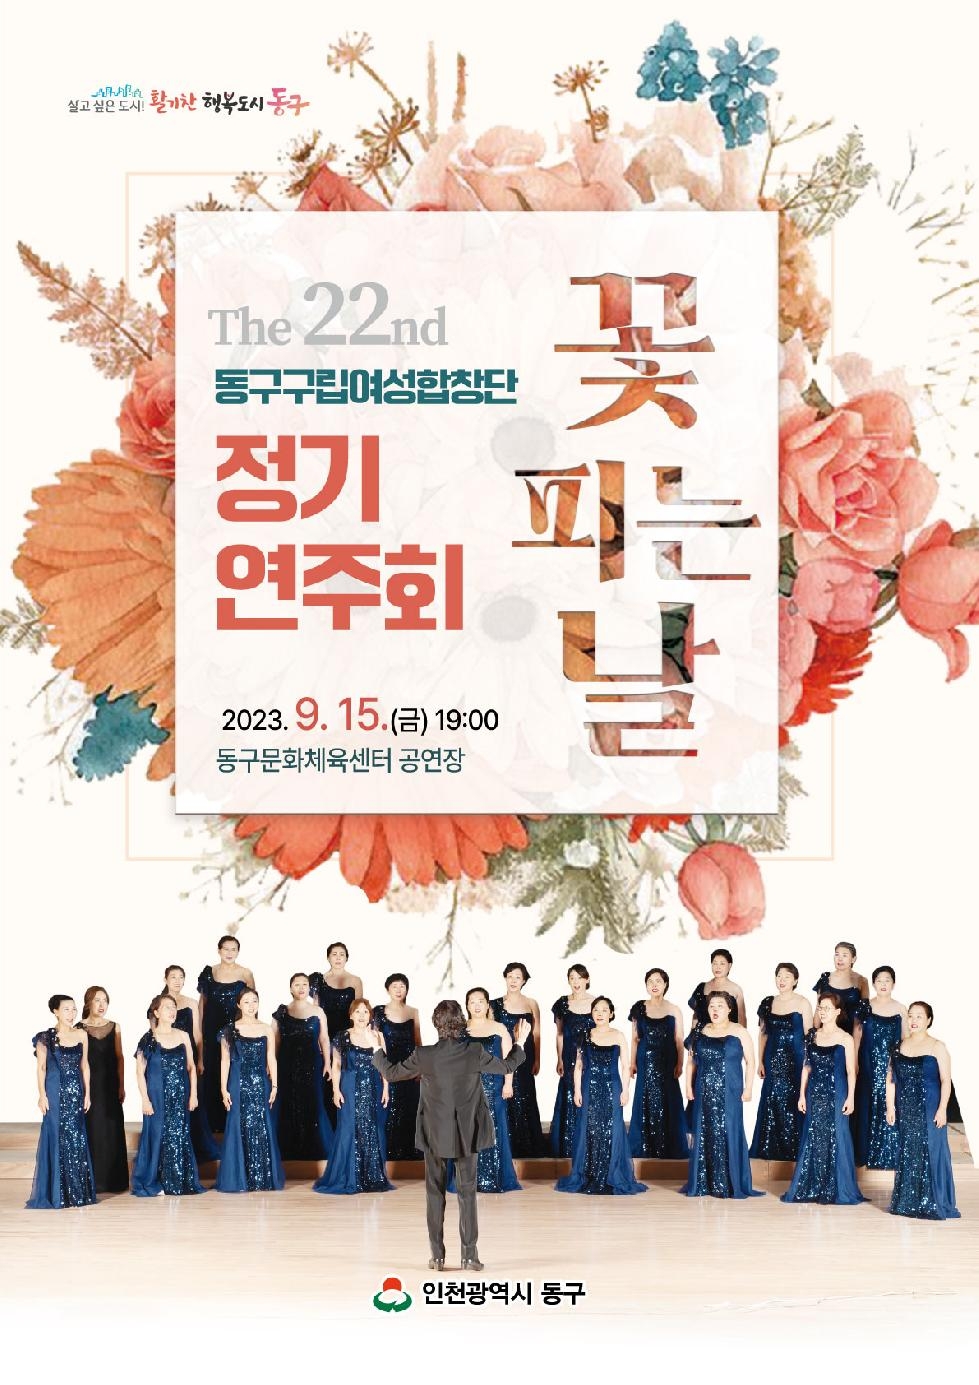 인천 동구 구립여성합창단, 제22회 정기연주회 ‘꽃 피는 날’개최